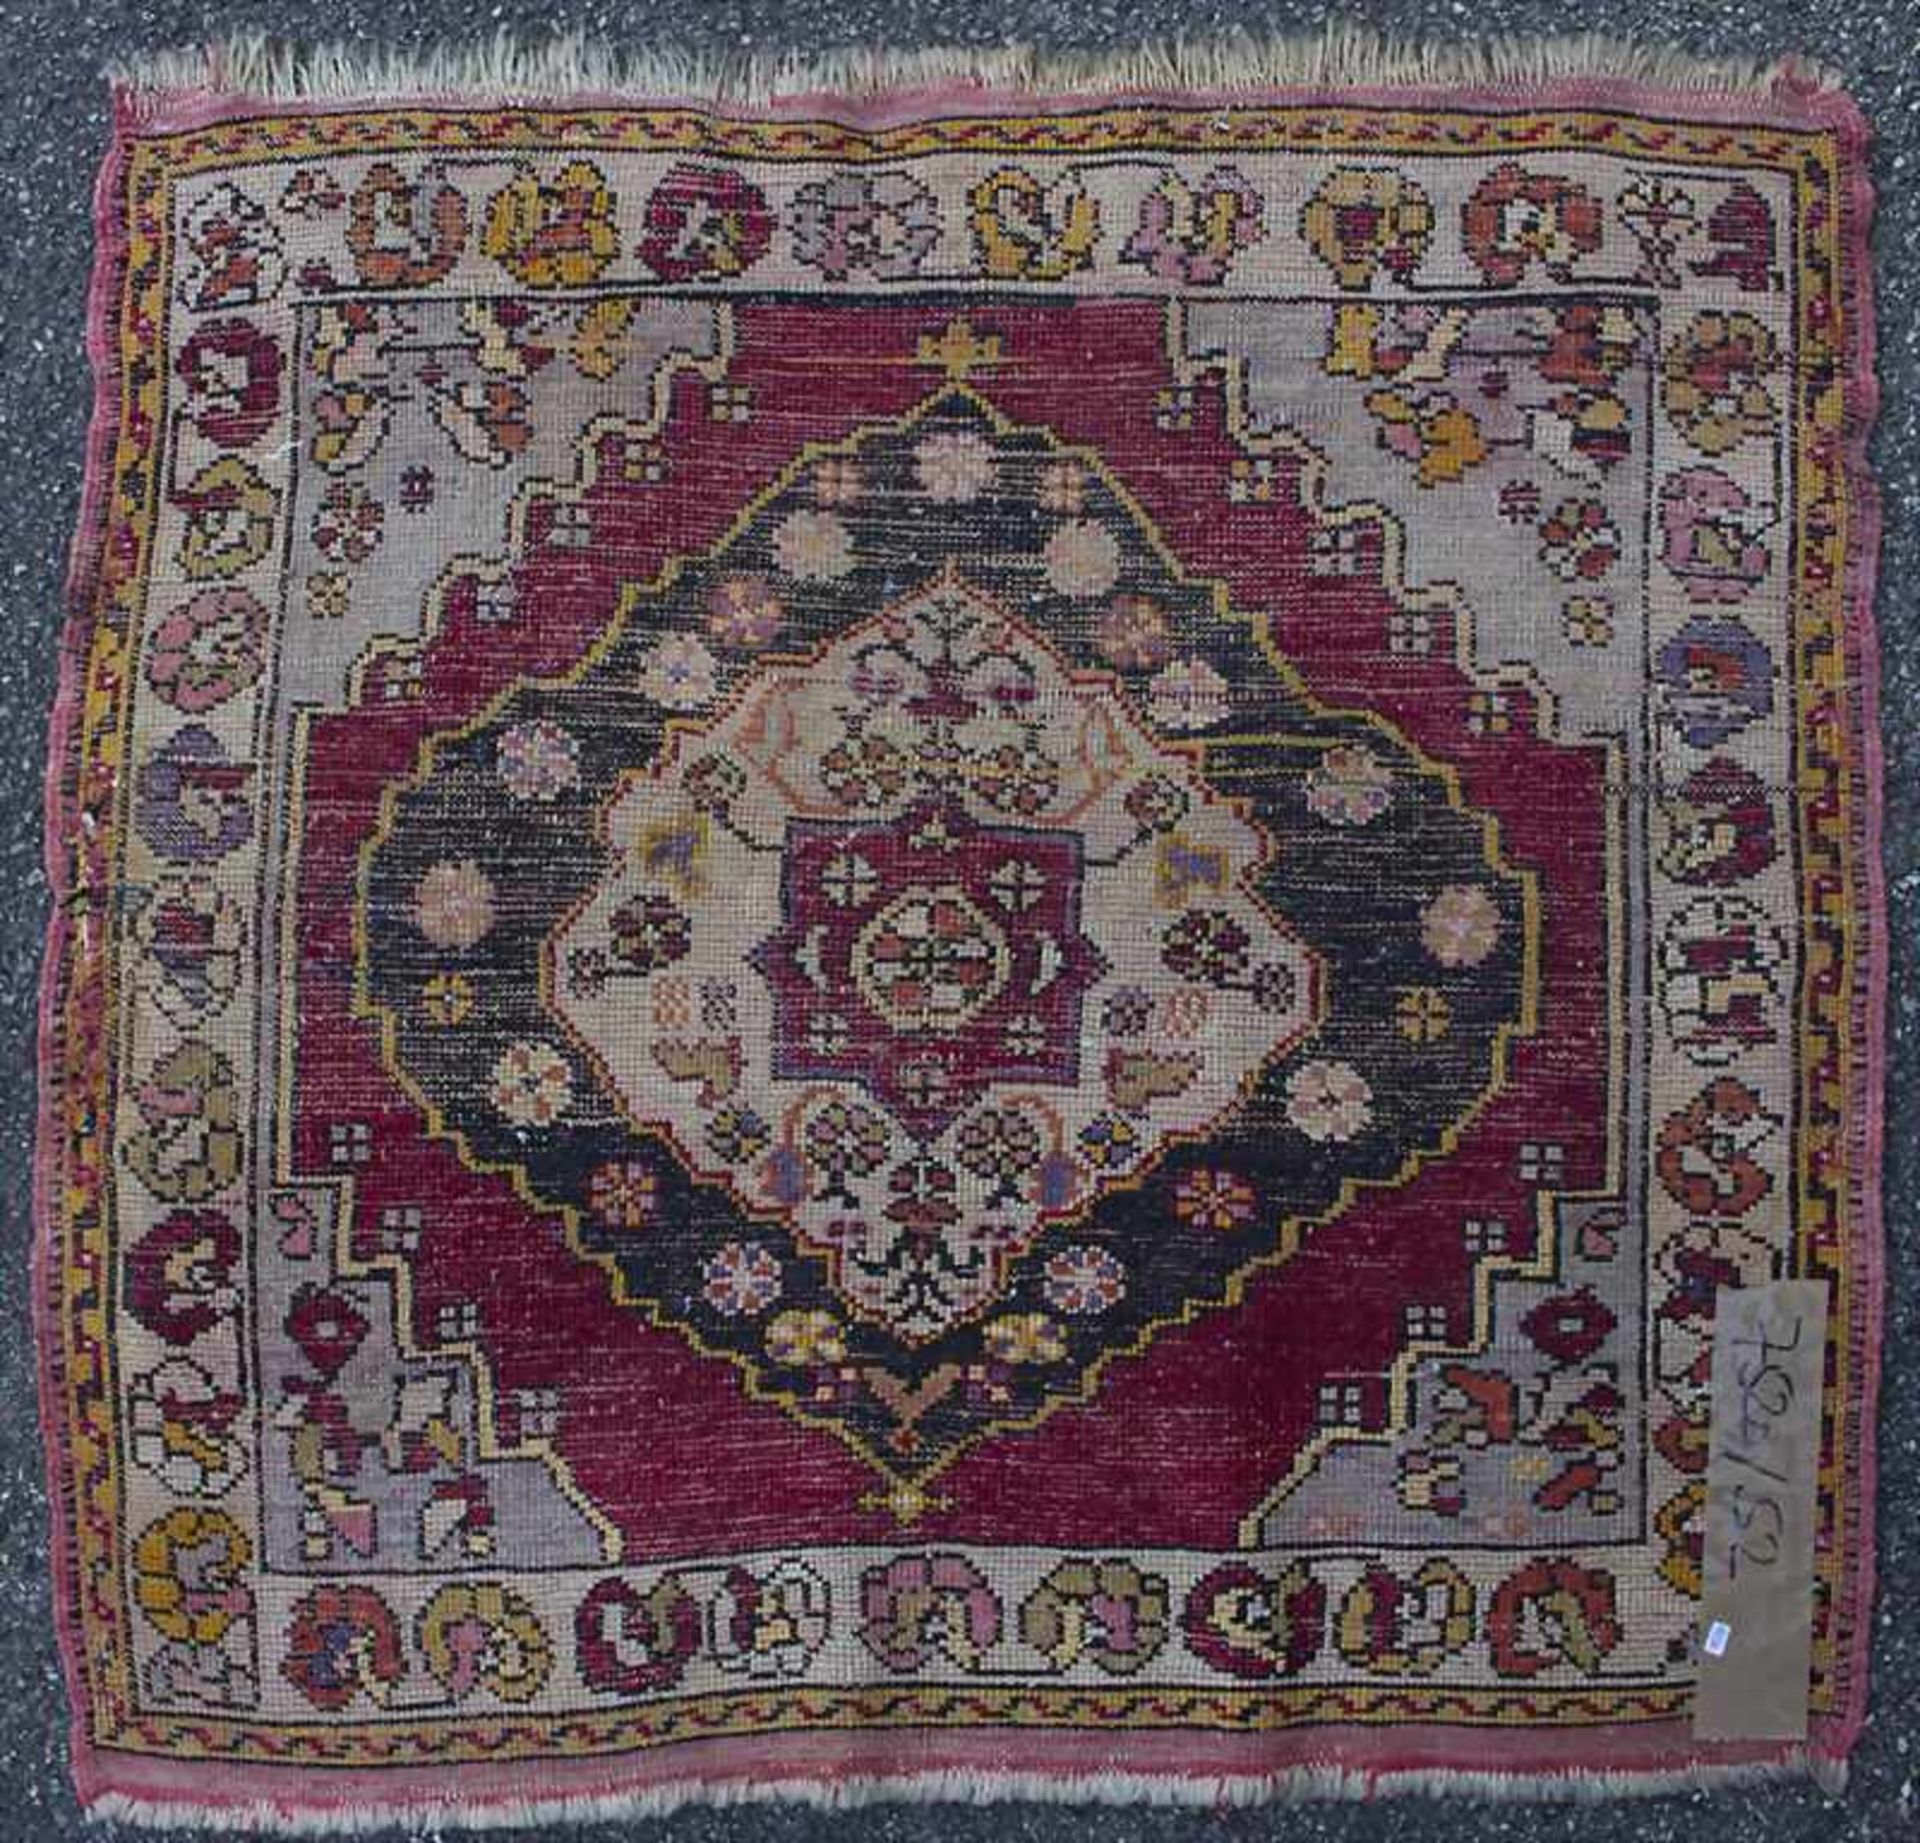 Kaukasischer Teppich / A caucasian carpetMaterial: Wolle auf Wolle, Maße: 80 x 78 cm, Zustand: gut - Bild 4 aus 7